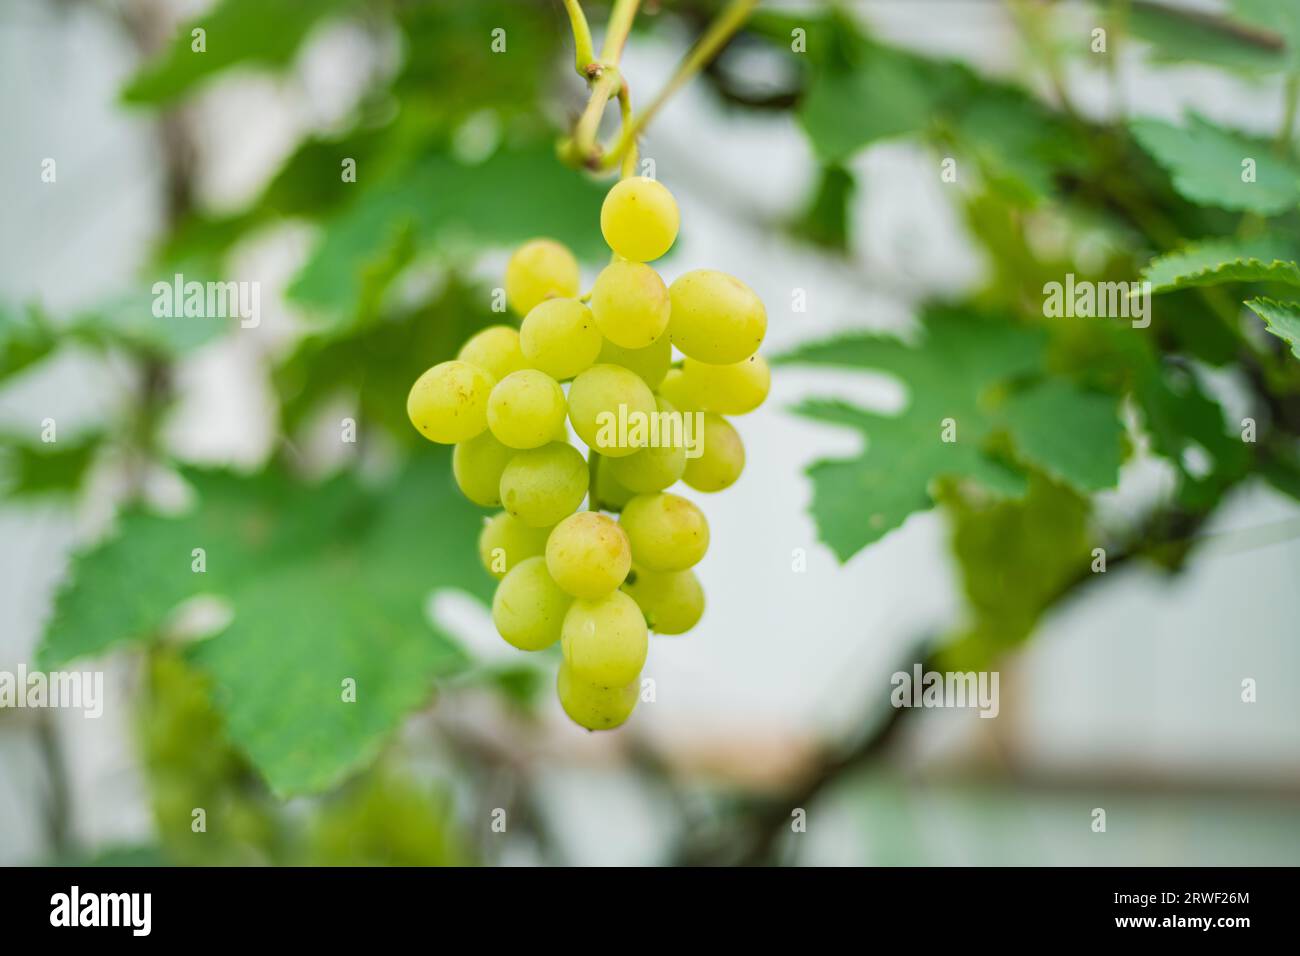 Sul ramo è appeso un grappolo di uva maturo. Le uve sono pronte per la vendemmia. Foto Stock